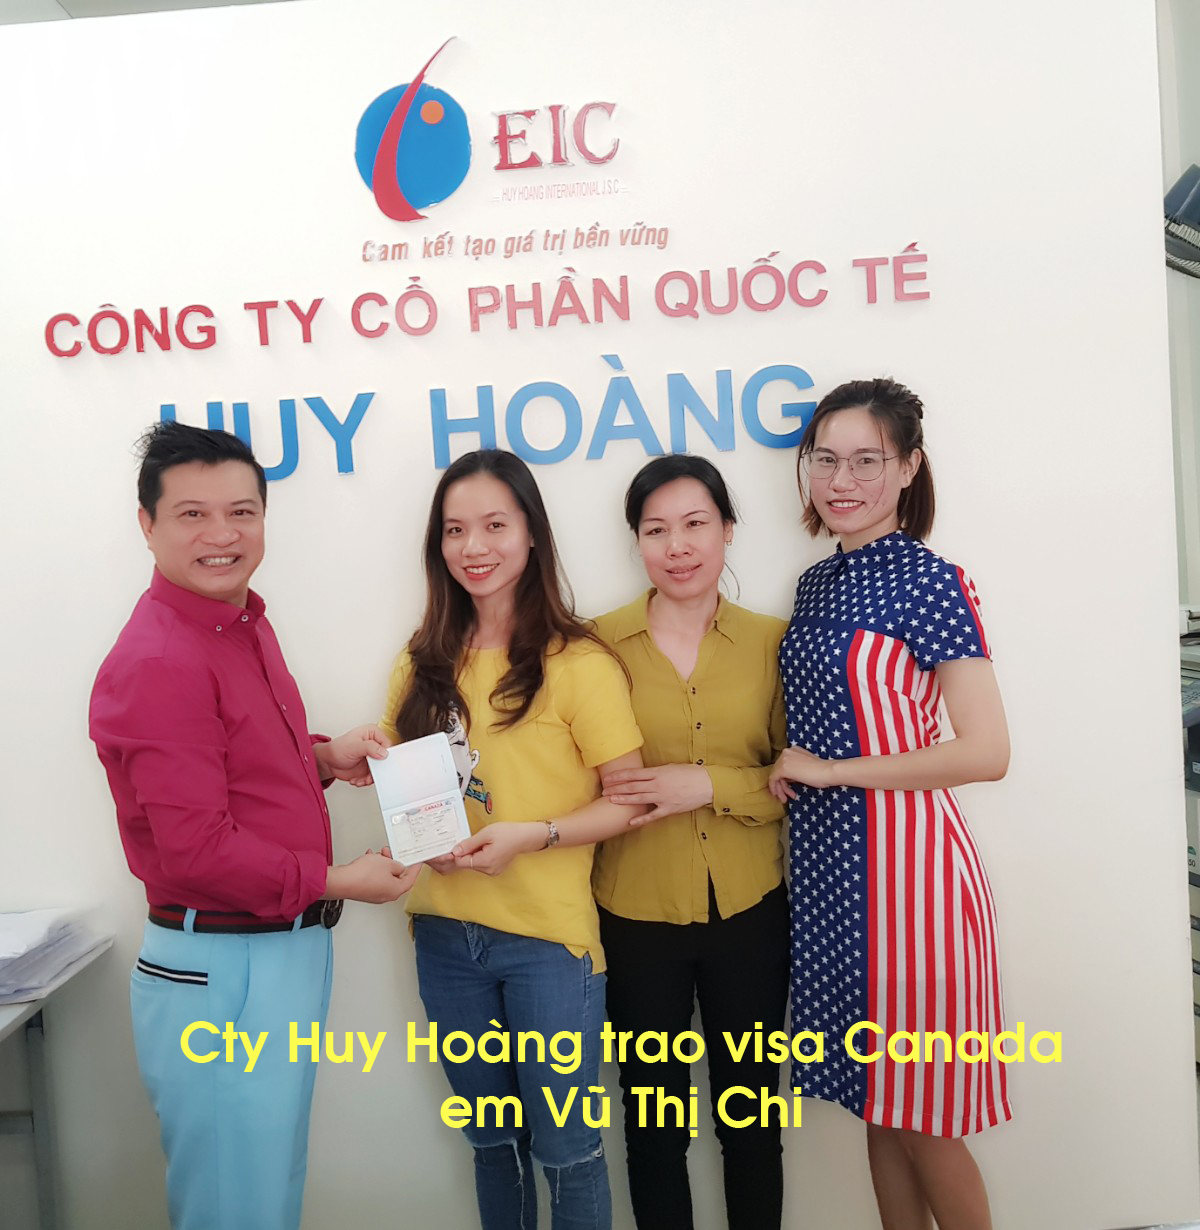 TGĐ trao visa du học Canada em Vũ Thị Chi cùng mẹ (giữa)